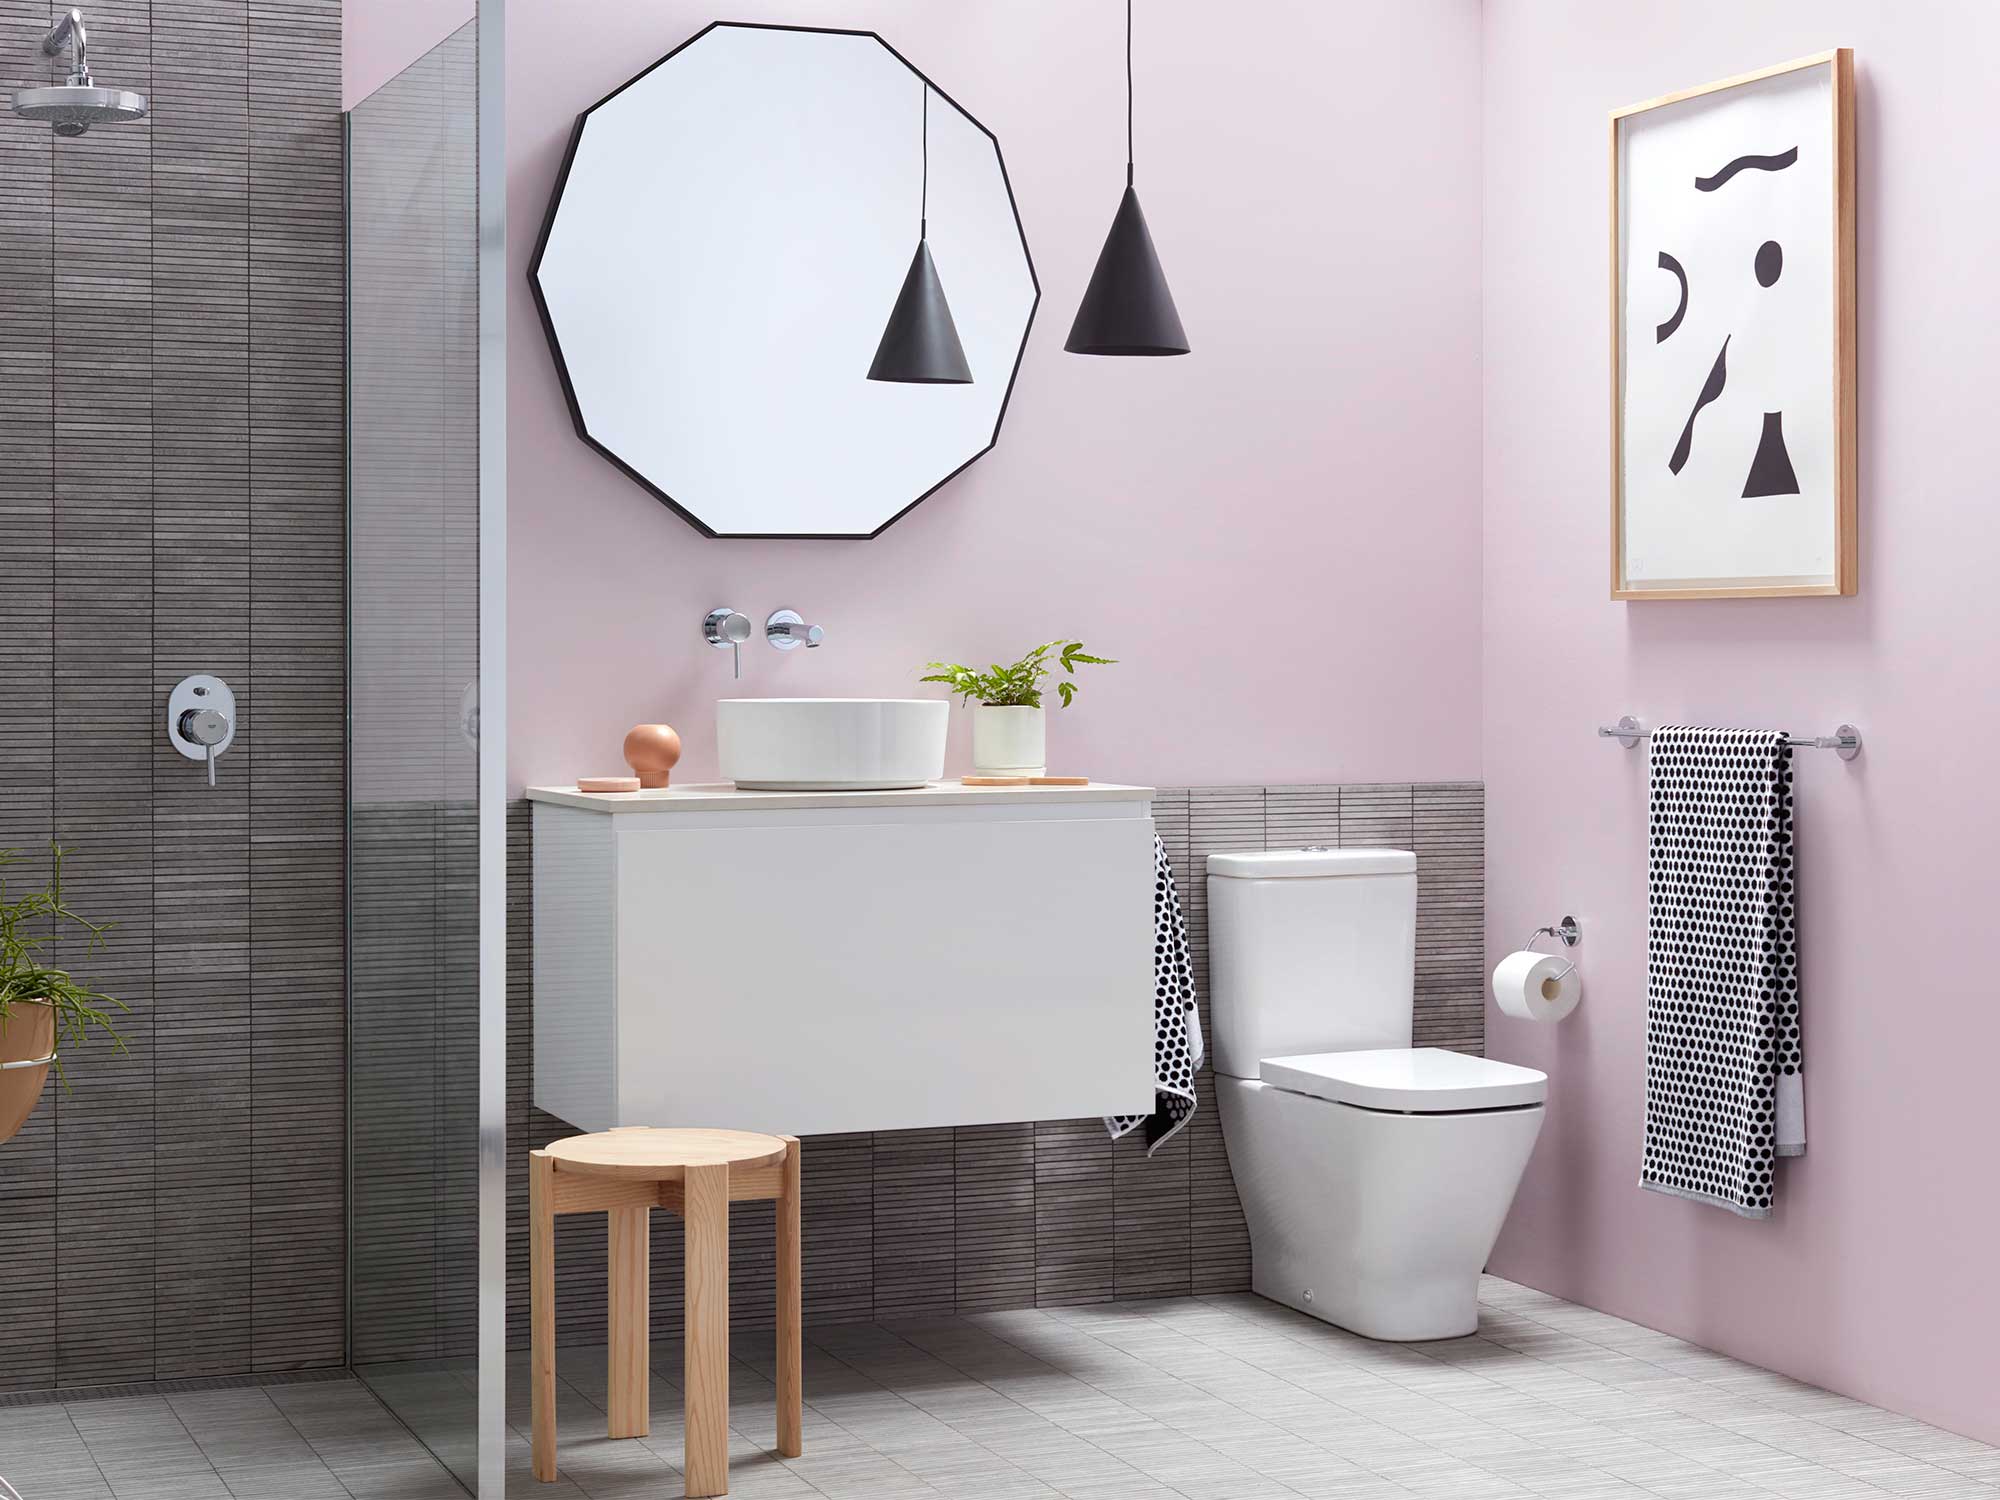 Salle de bains grise à mur rose